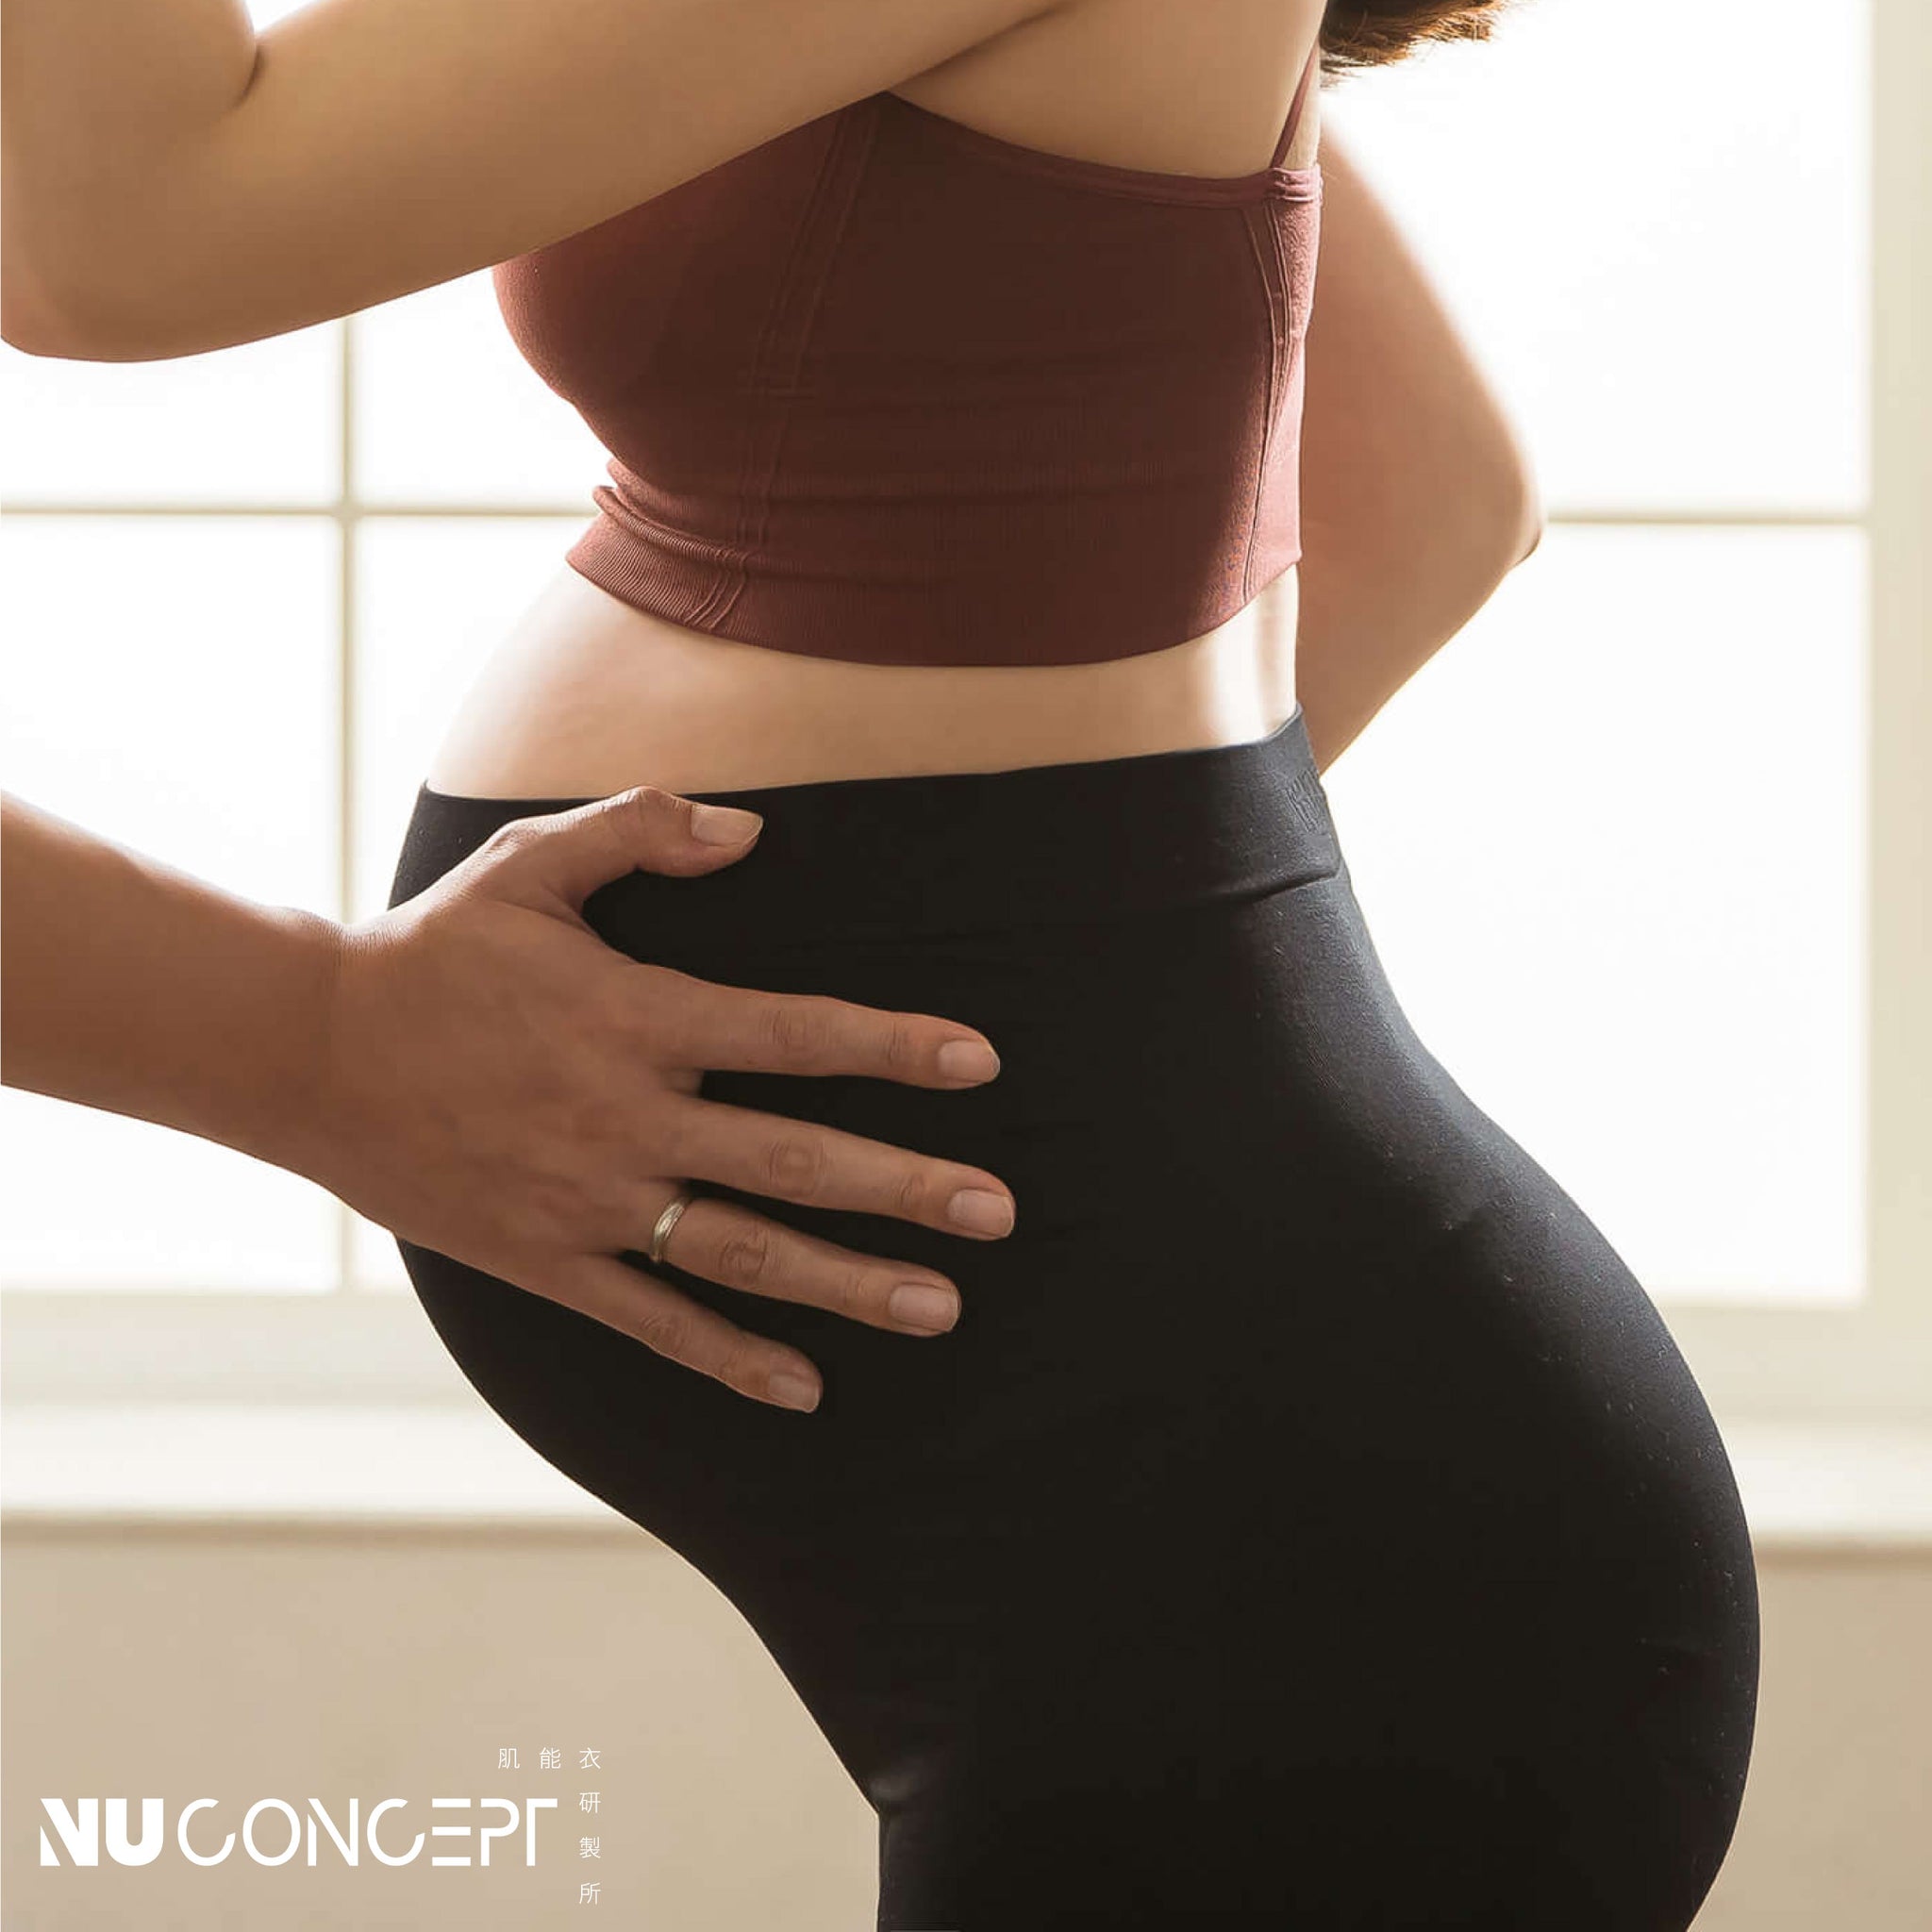 FIR美敷肌能孕婦壓力褲，產前維持體態，產後回復美型，最適孕婦日常與運動穿著